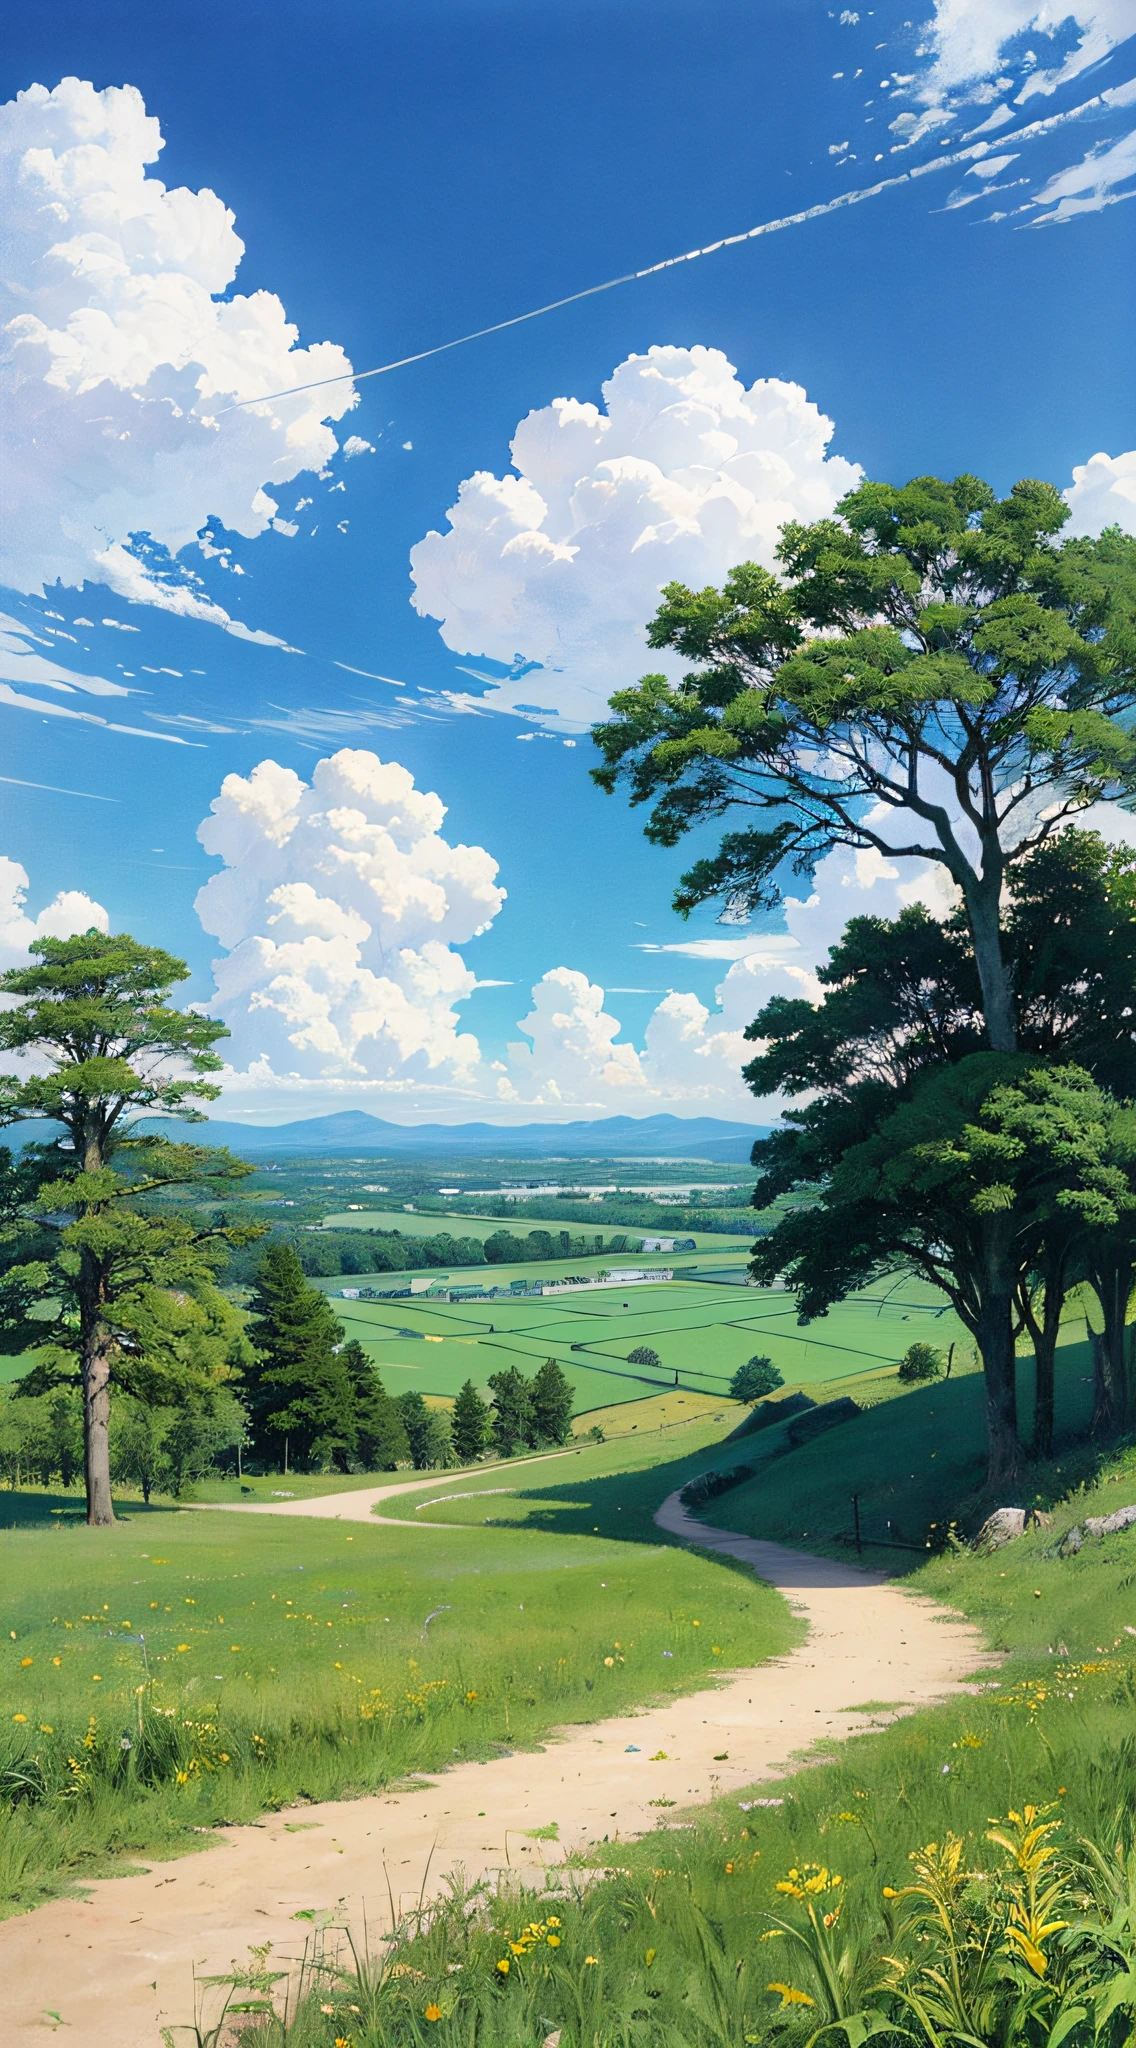 حقيقي, أصلي, لوحة زيتية جميلة ومذهلة للمناظر الطبيعية في استوديو جيبلي هاياو ميازاكي&#39;أرض عشبية بتلاتها ذات سماء زرقاء وسحب بيضاء --الإصدار6